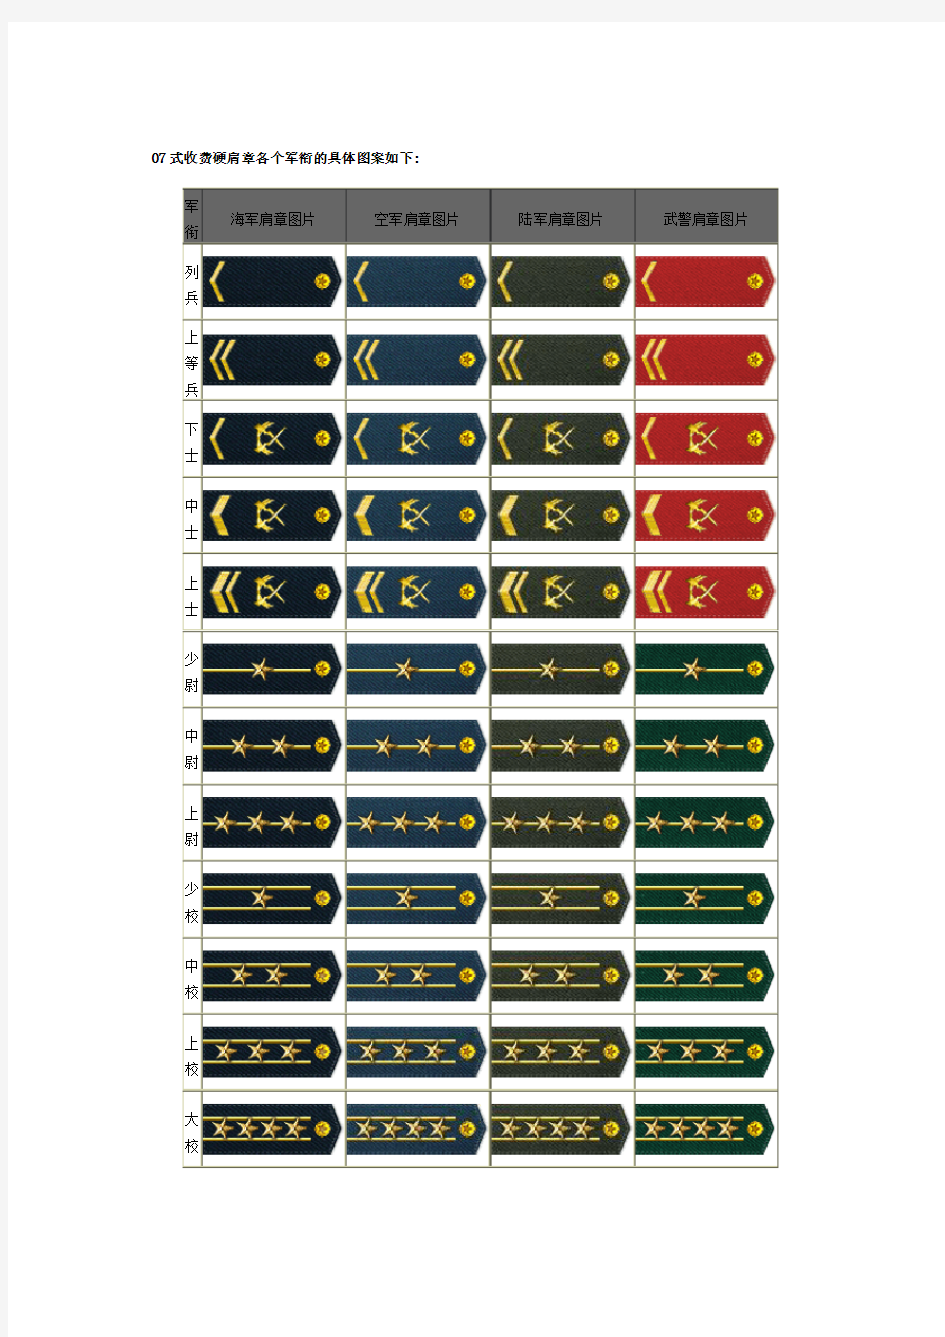 中国人民解放军肩章各个军衔的具体图案如下